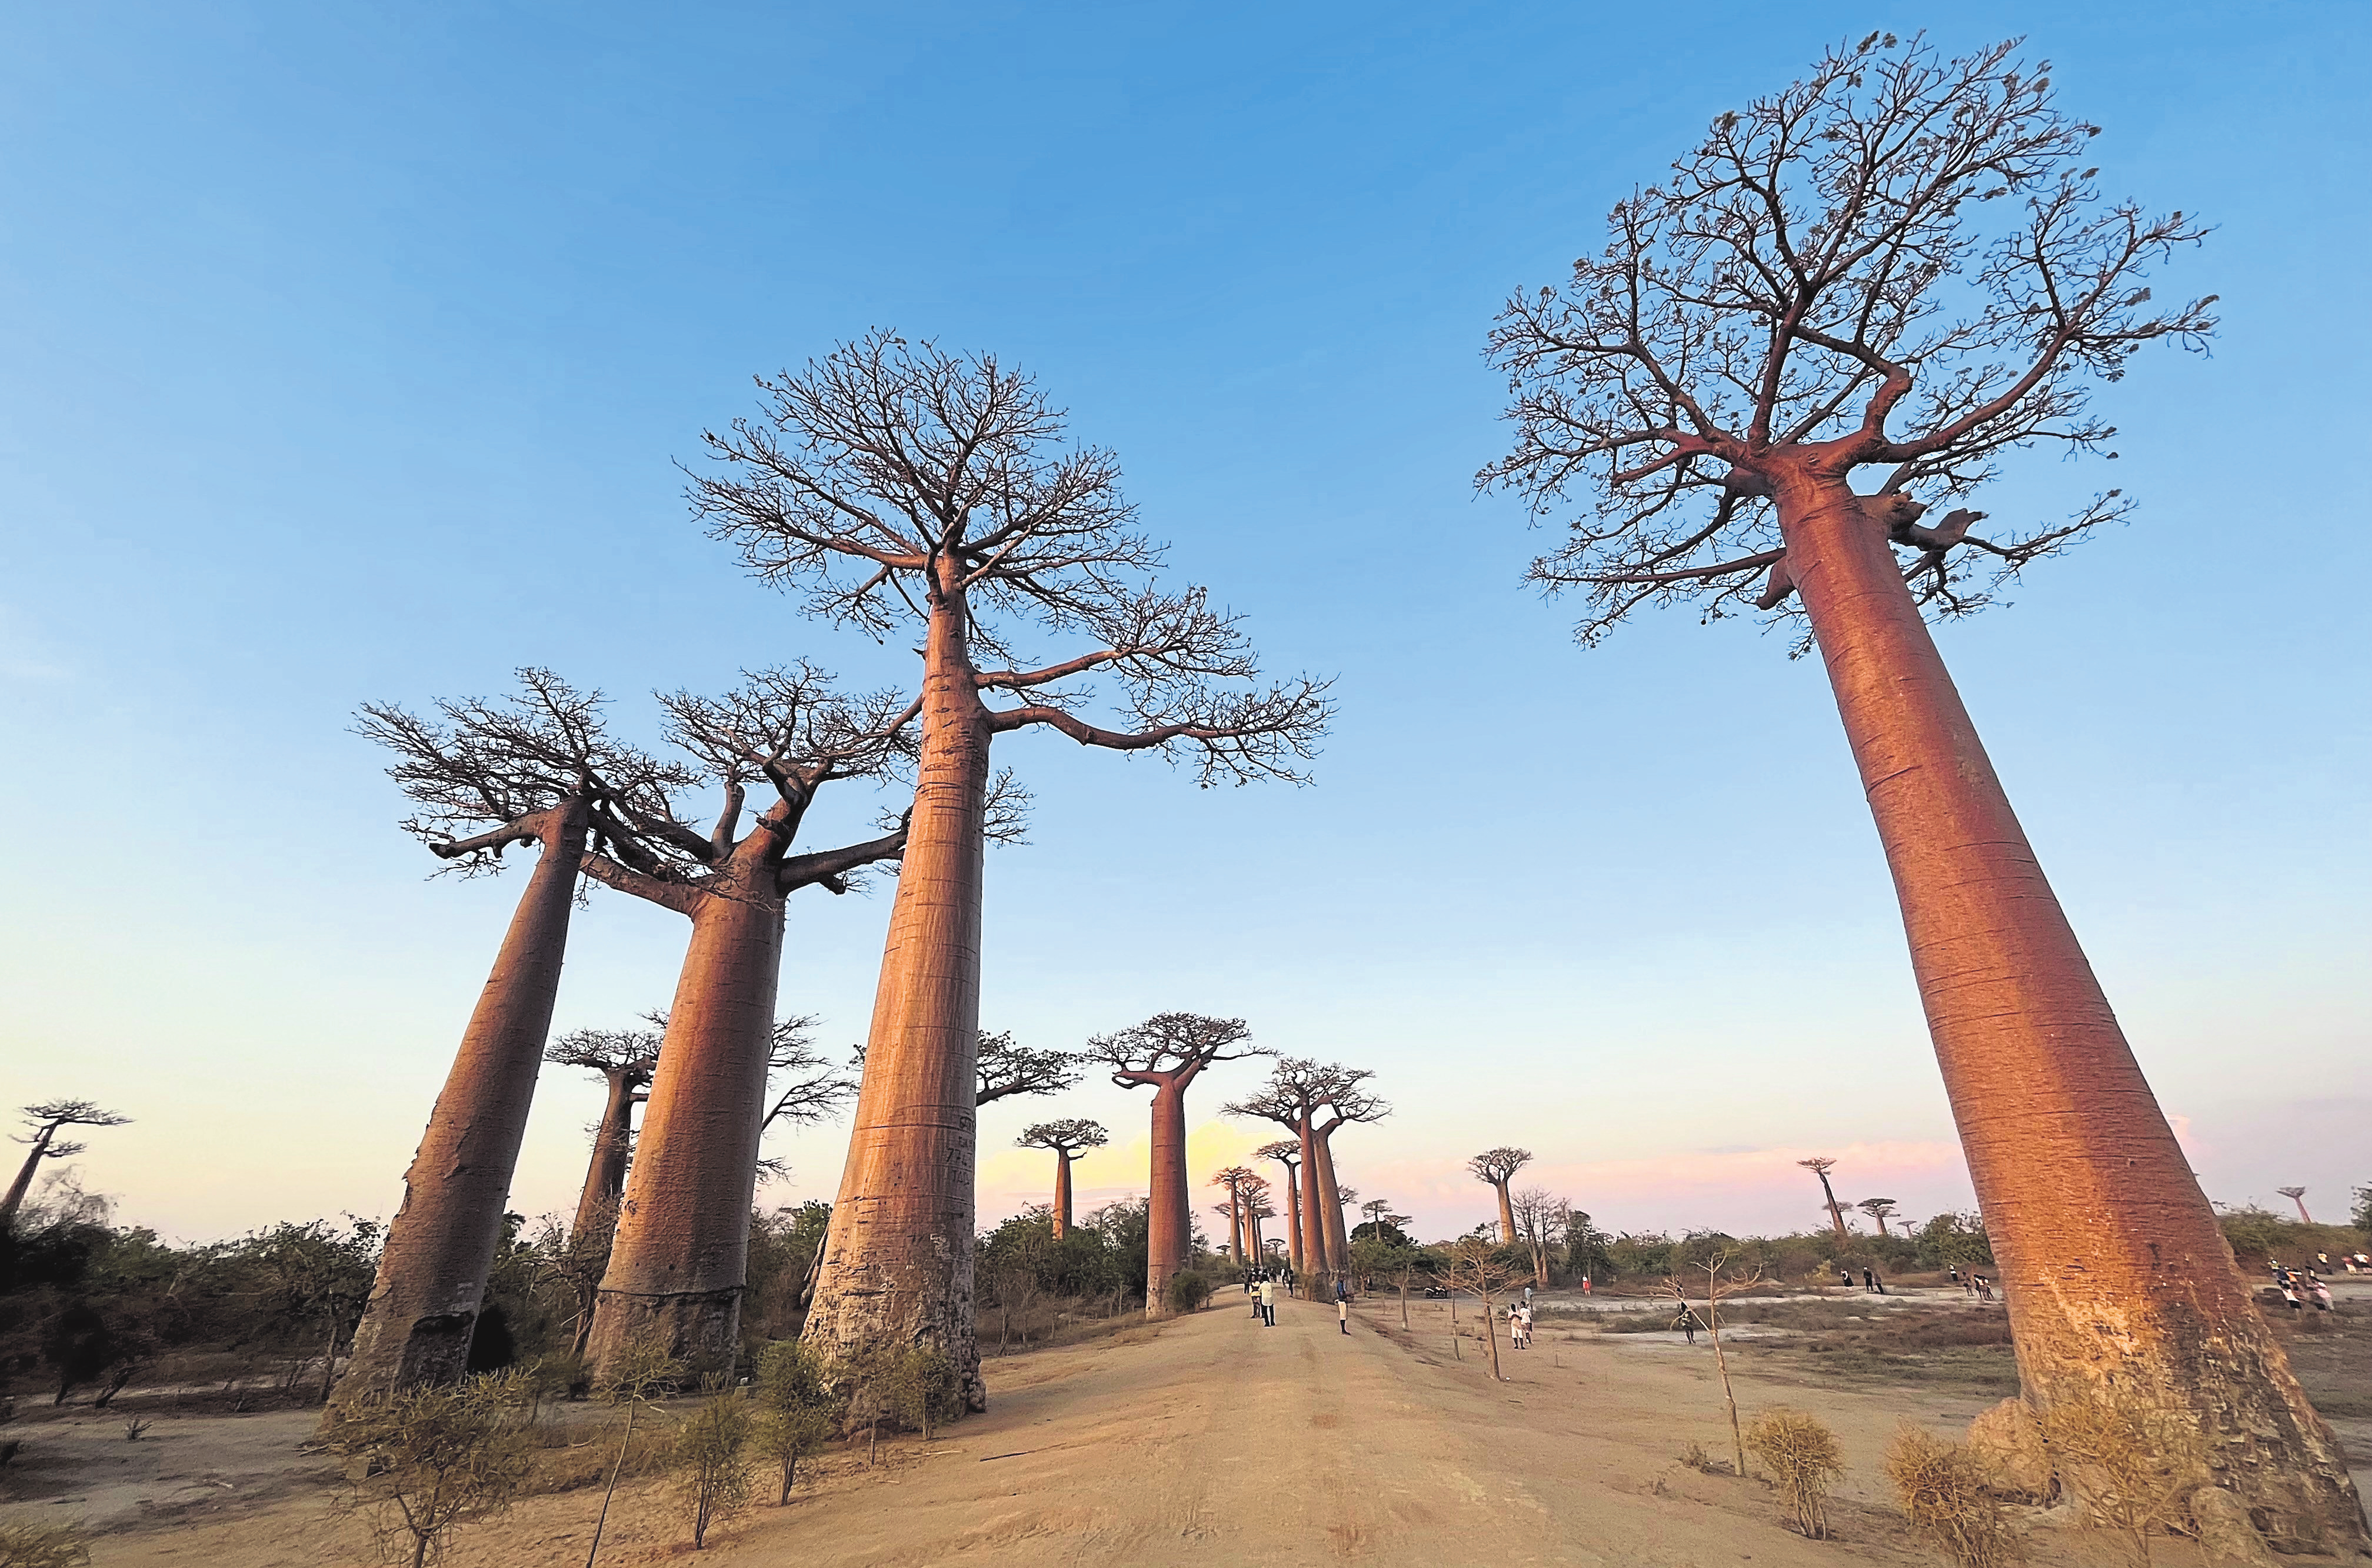 L'allée des baobabs est incontournable si vous posez les pieds à Madagascar. Privilégiez la fin du jour pour un panorama à couper £le souffle.